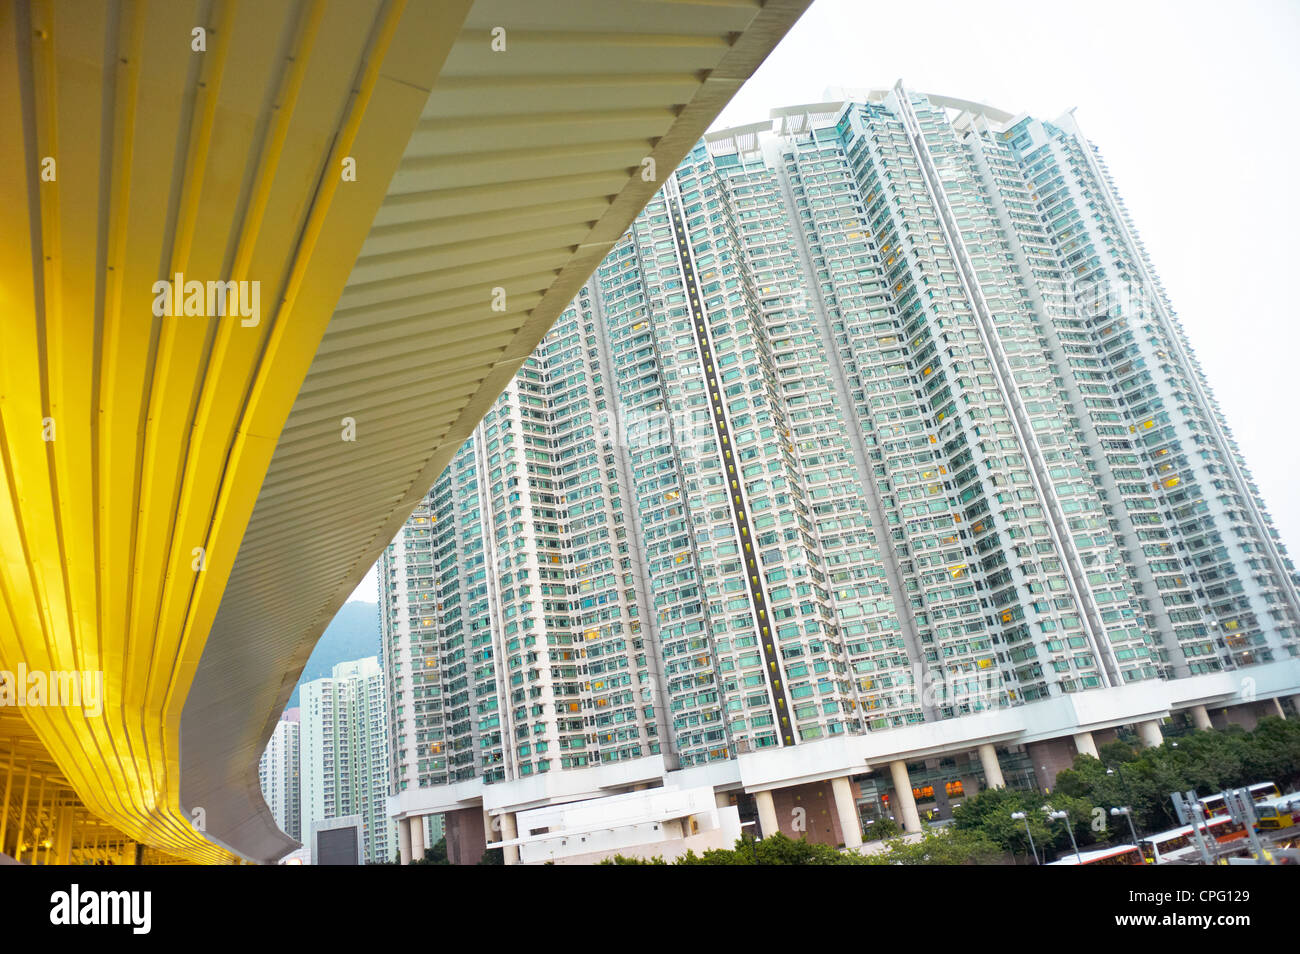 Voir de grands immeubles résidentiels dans le cadre d'une route panoramique à Hong Kong, Chine. Banque D'Images